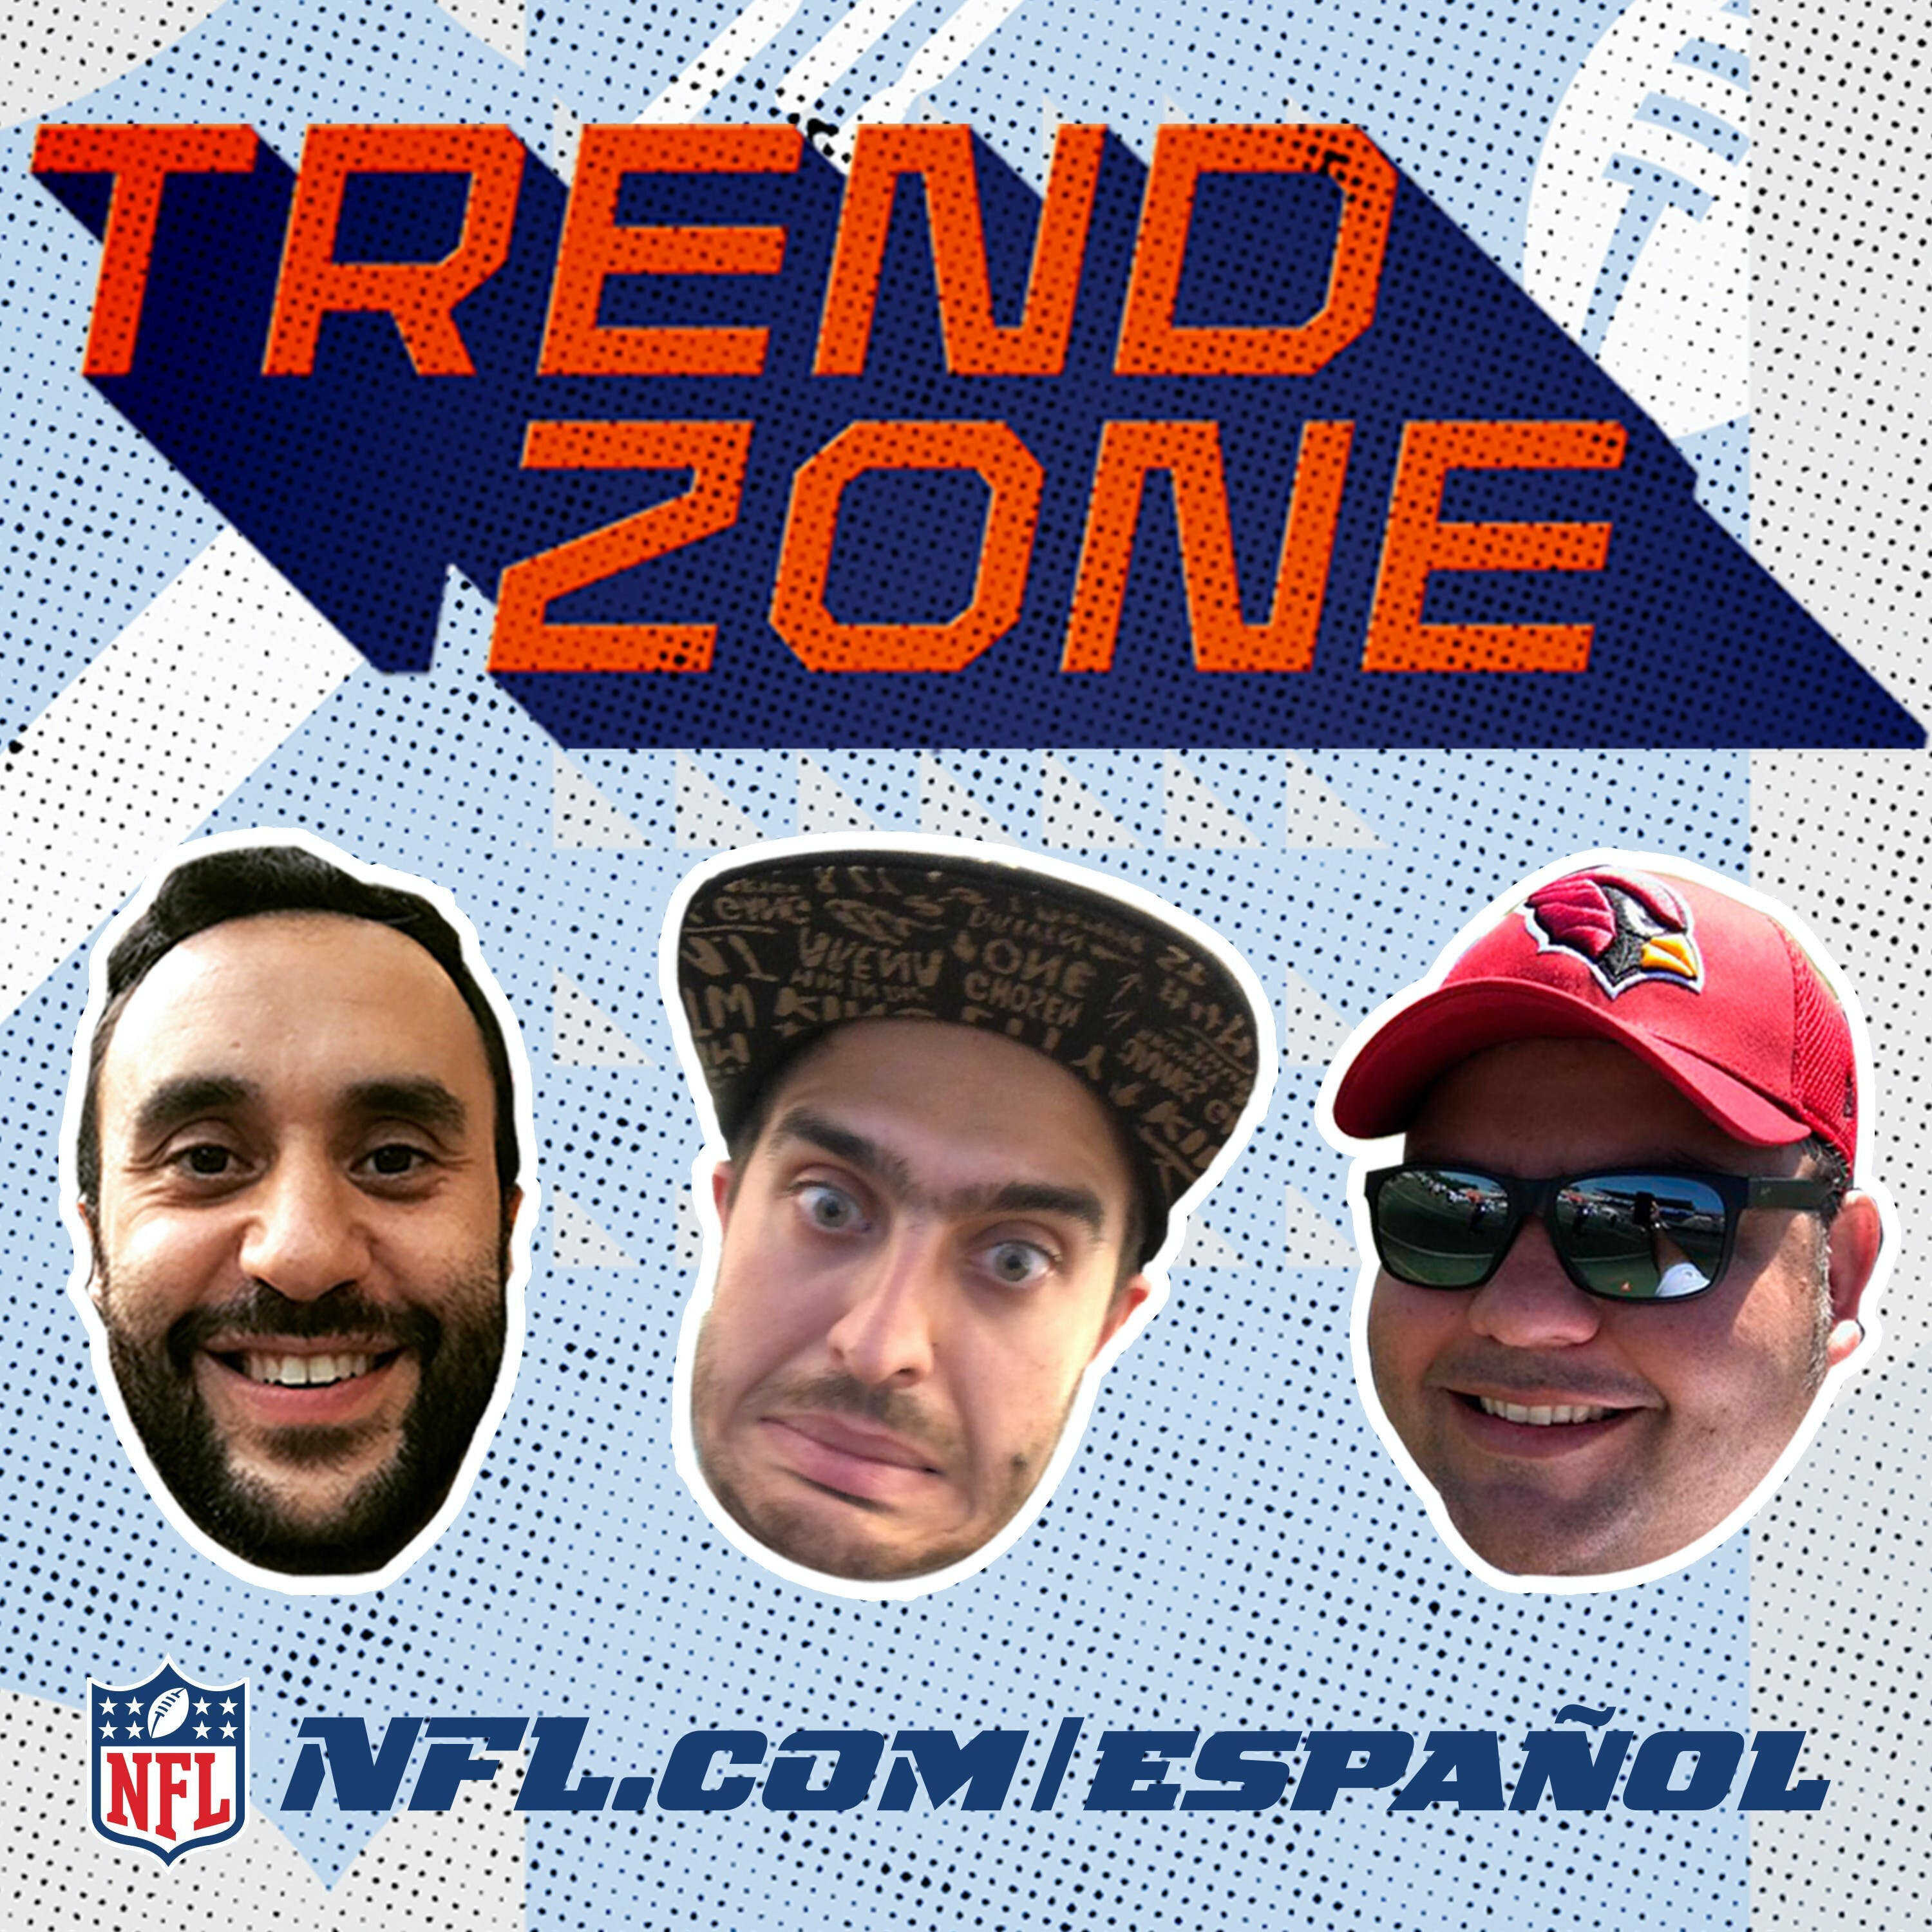 Enrique Burak, Mauricio Gutiérrez y toda la banda de Trendzone analizan la semana 14 y los playoffs del Fantasy NFL